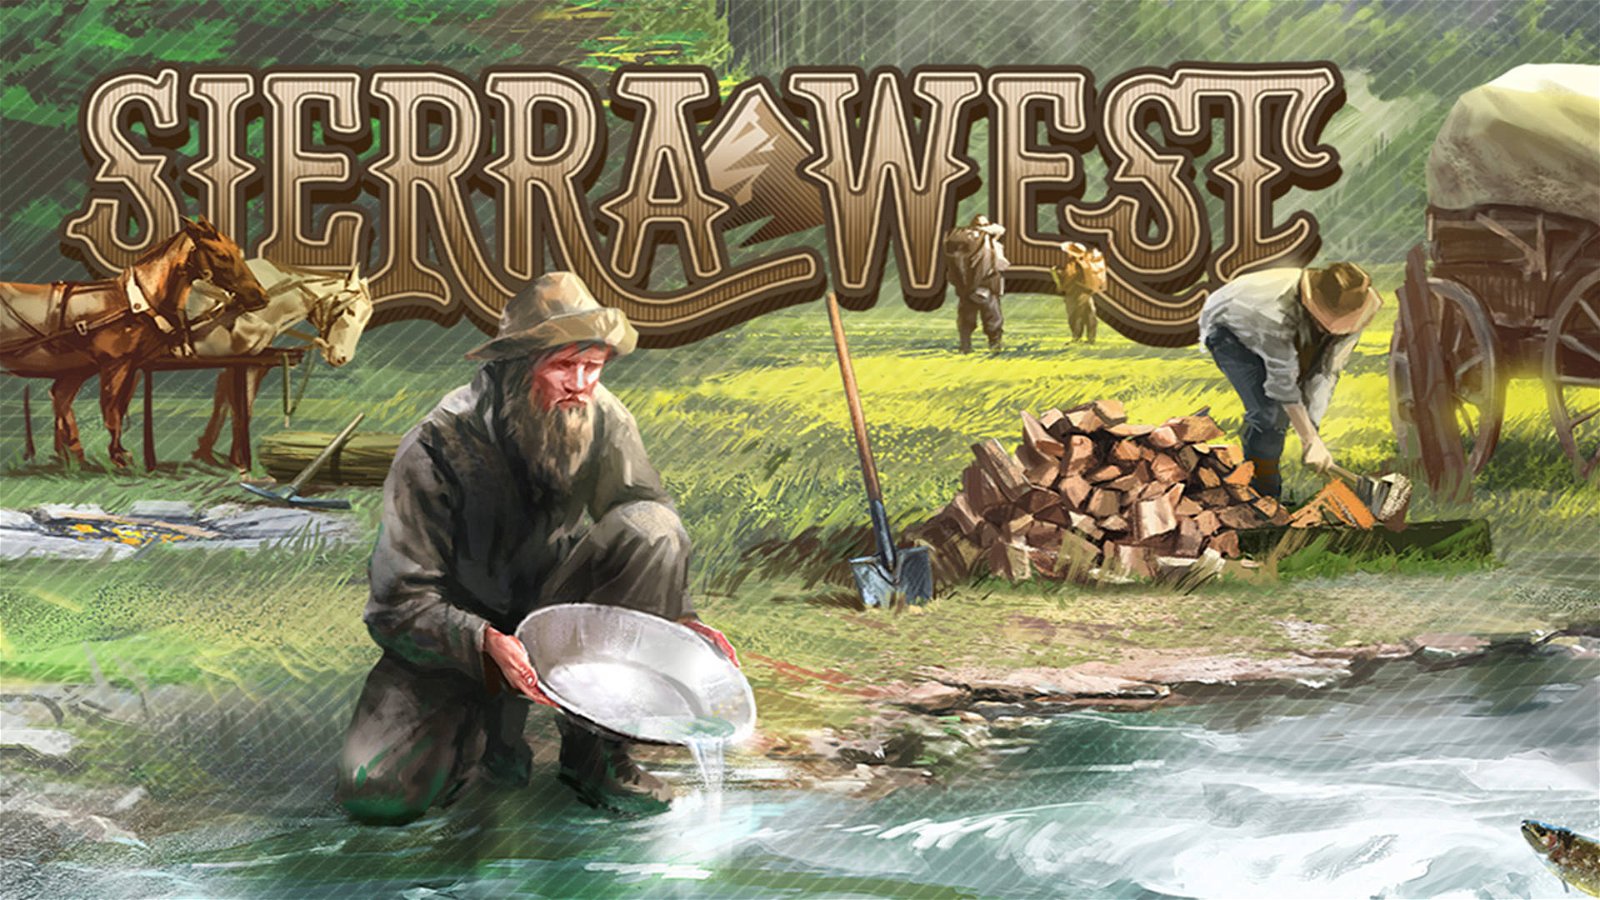 Immagine di Sierra West, la recensione: pionieri in cerca di fortuna nel vecchio West